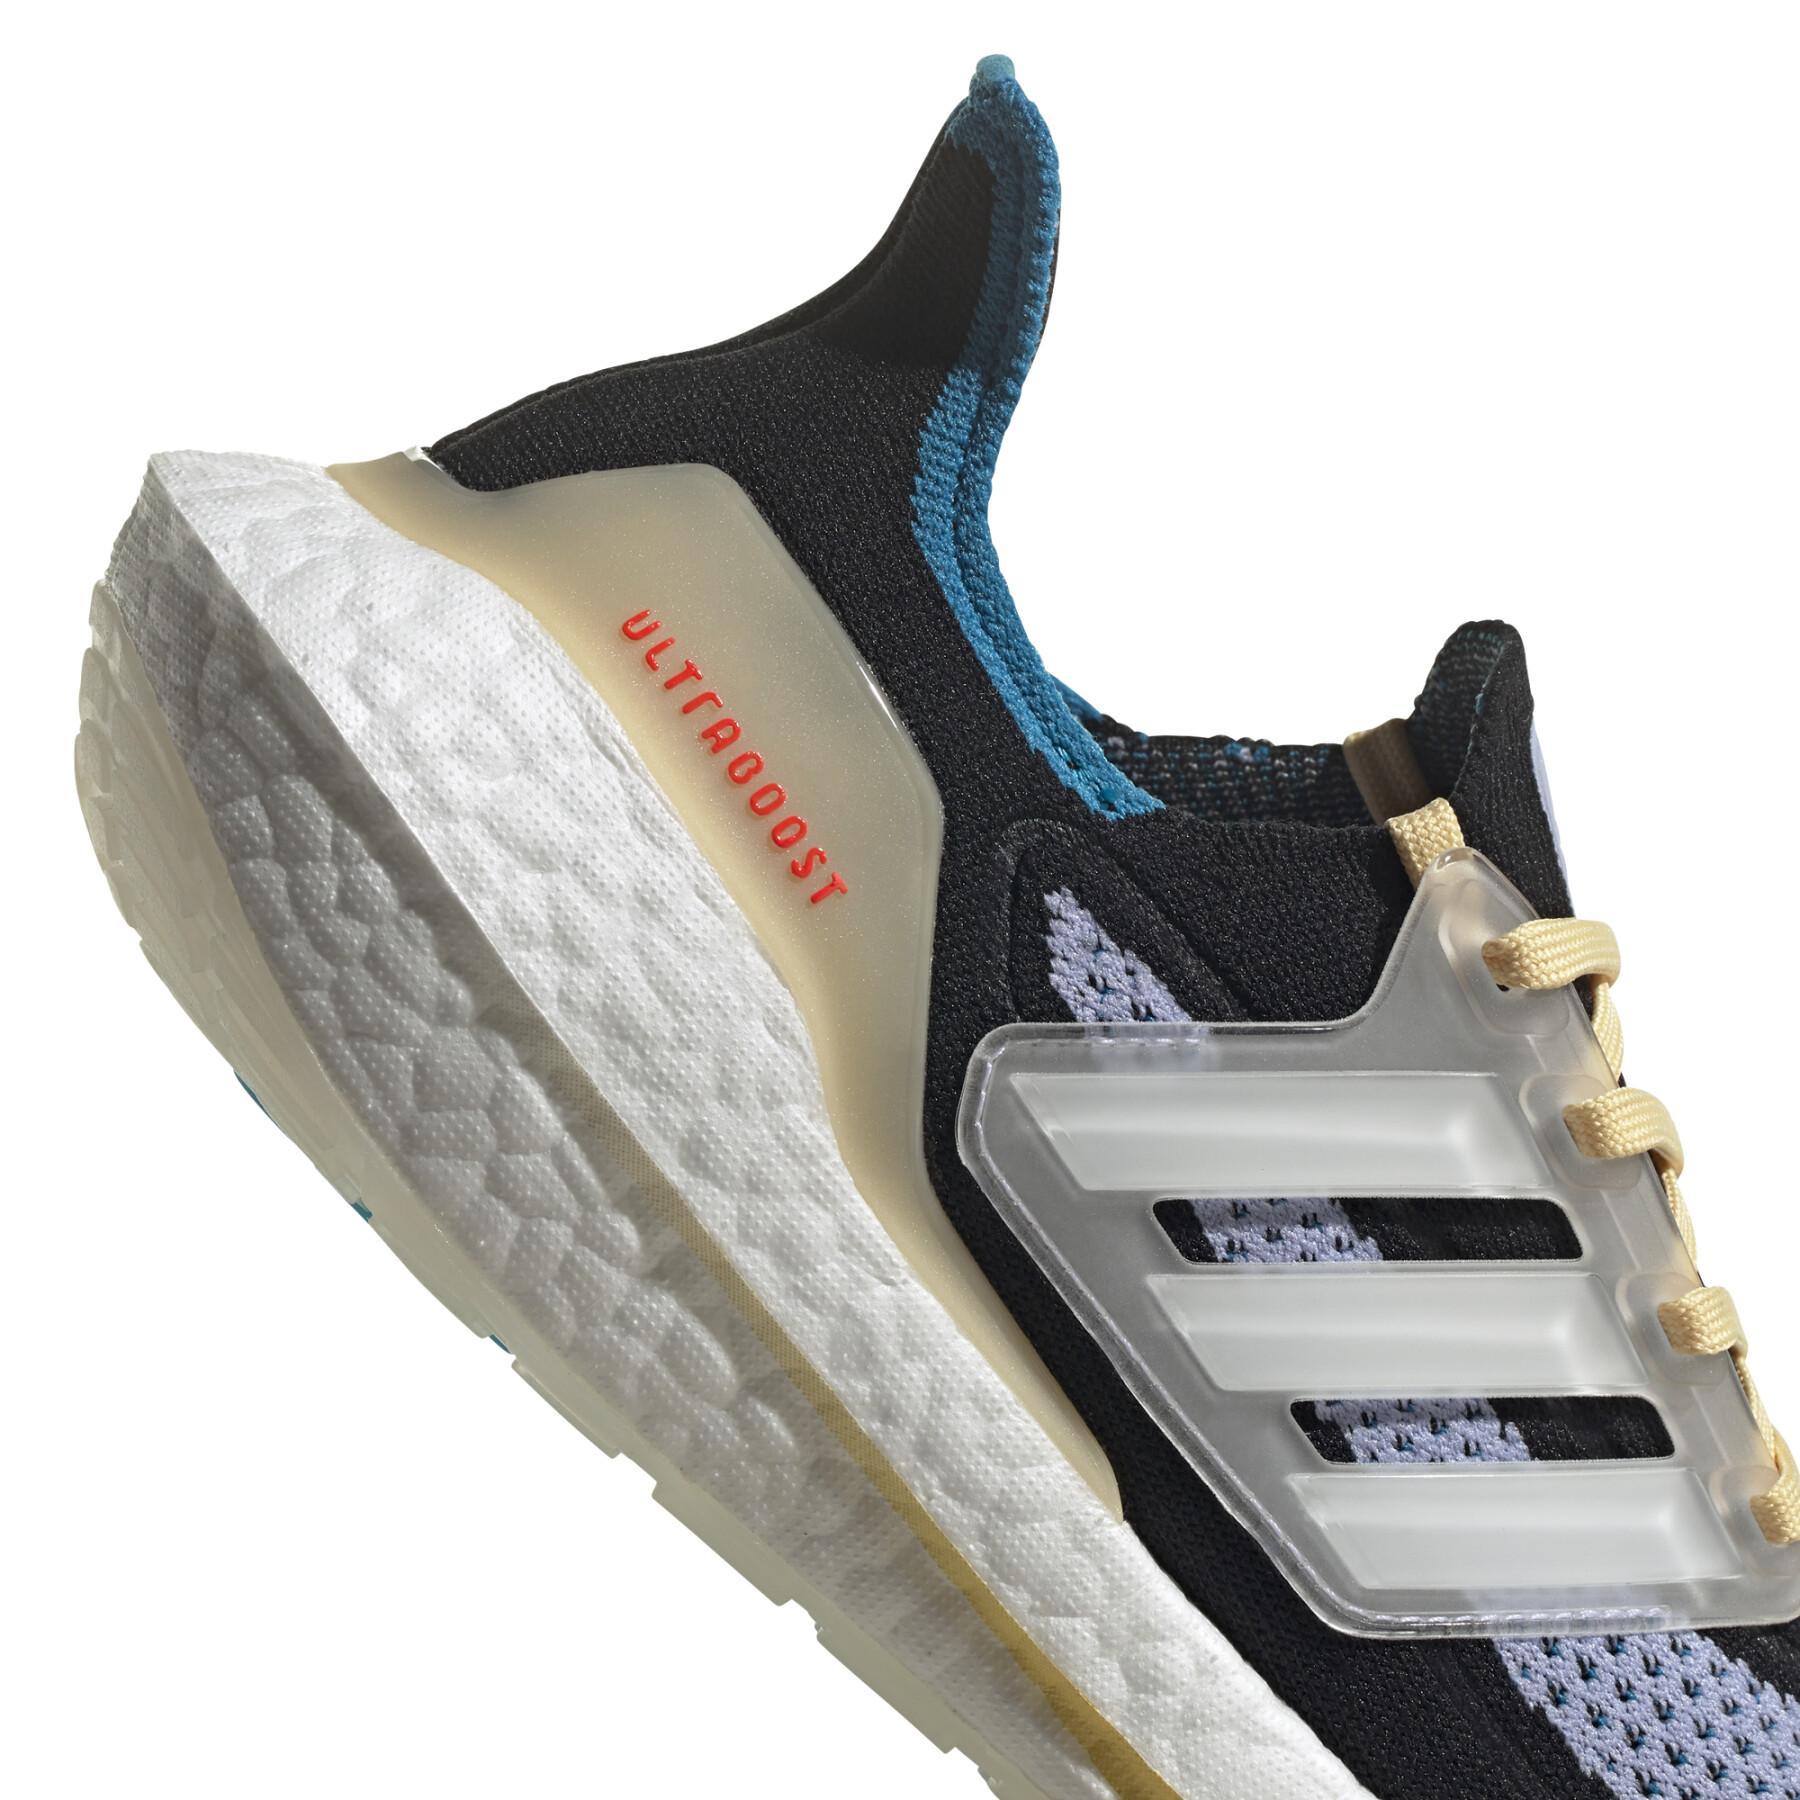 Women's running shoes adidas Ultraboost 21